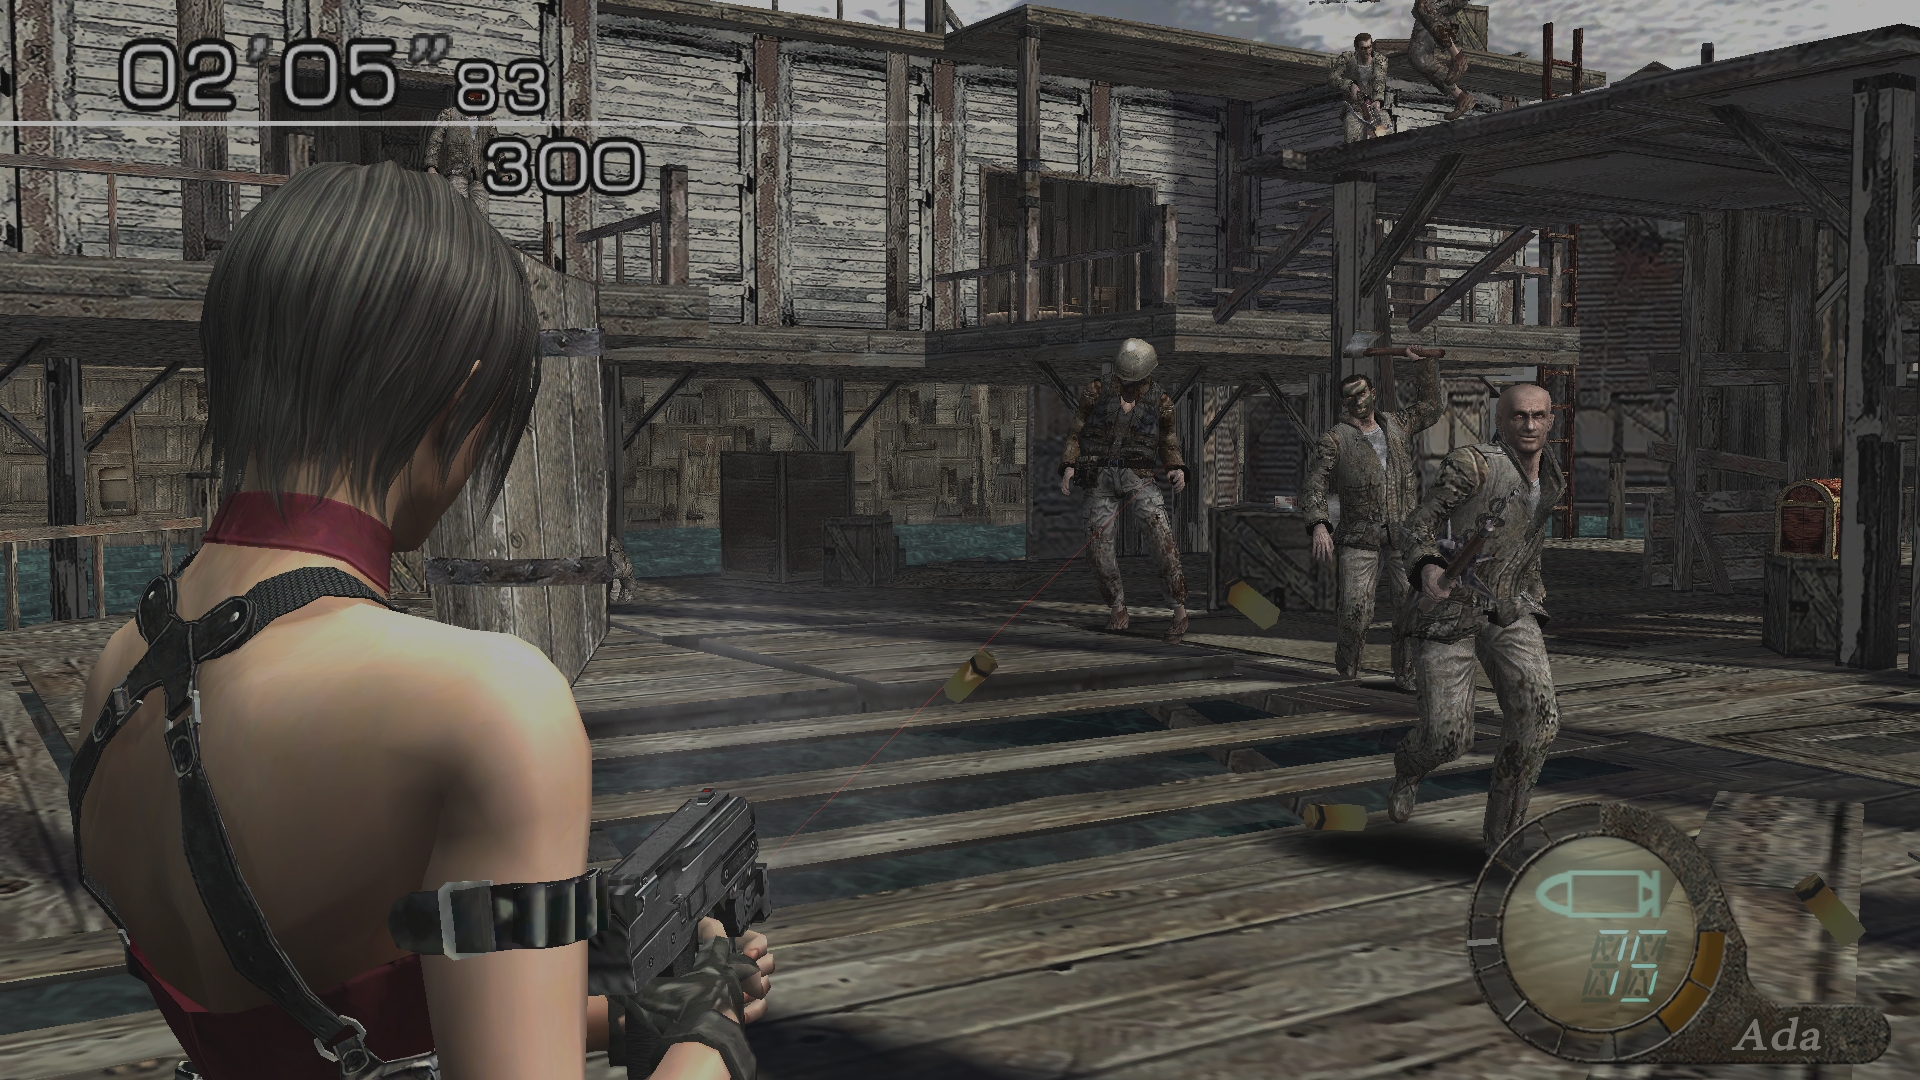 Immagine pubblicata in relazione al seguente contenuto: Capcom annuncia la data di lancio di Resident Evil 4 per PS4 e Xbox One | Nome immagine: news24563_Resident-Evil-4-Screenshot_1.jpg